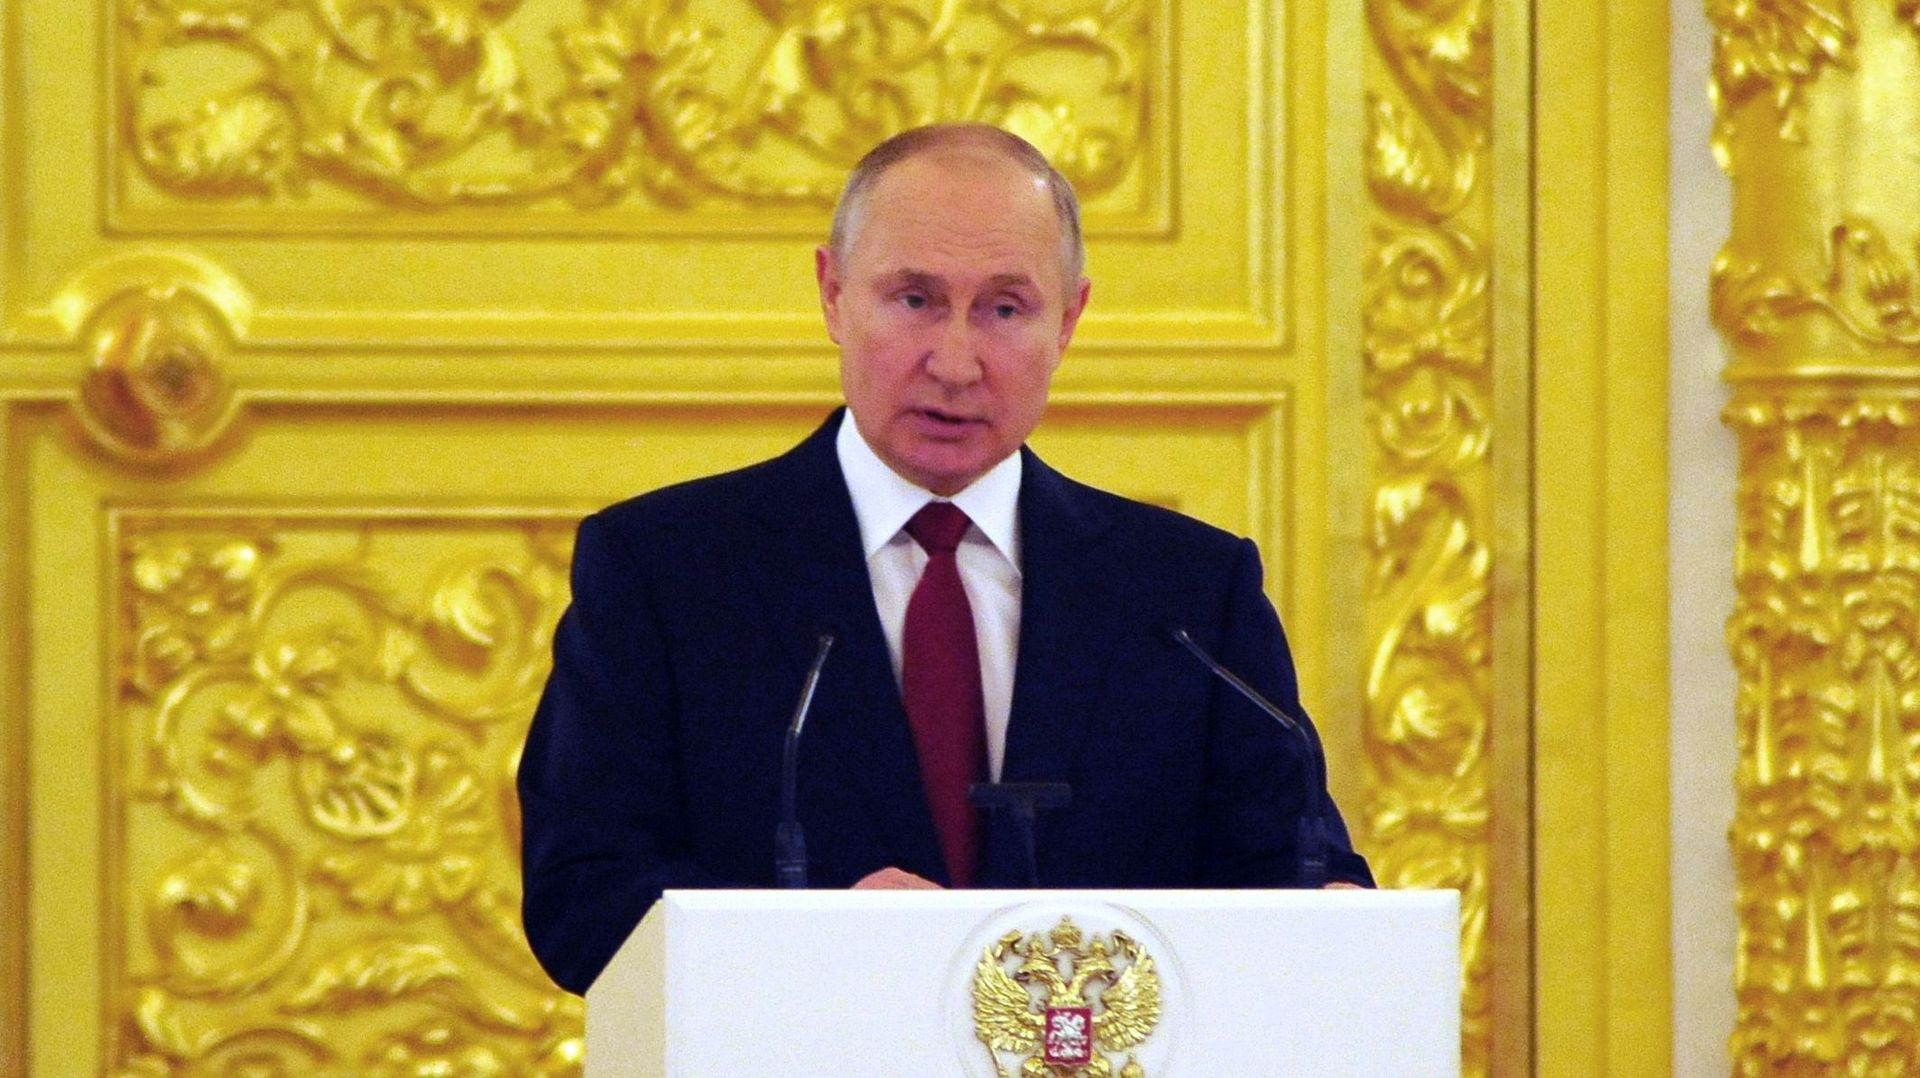 Le président russe Vladimir Poutine, un partenaire incontournable mais difficile à gérer pour les Européens.